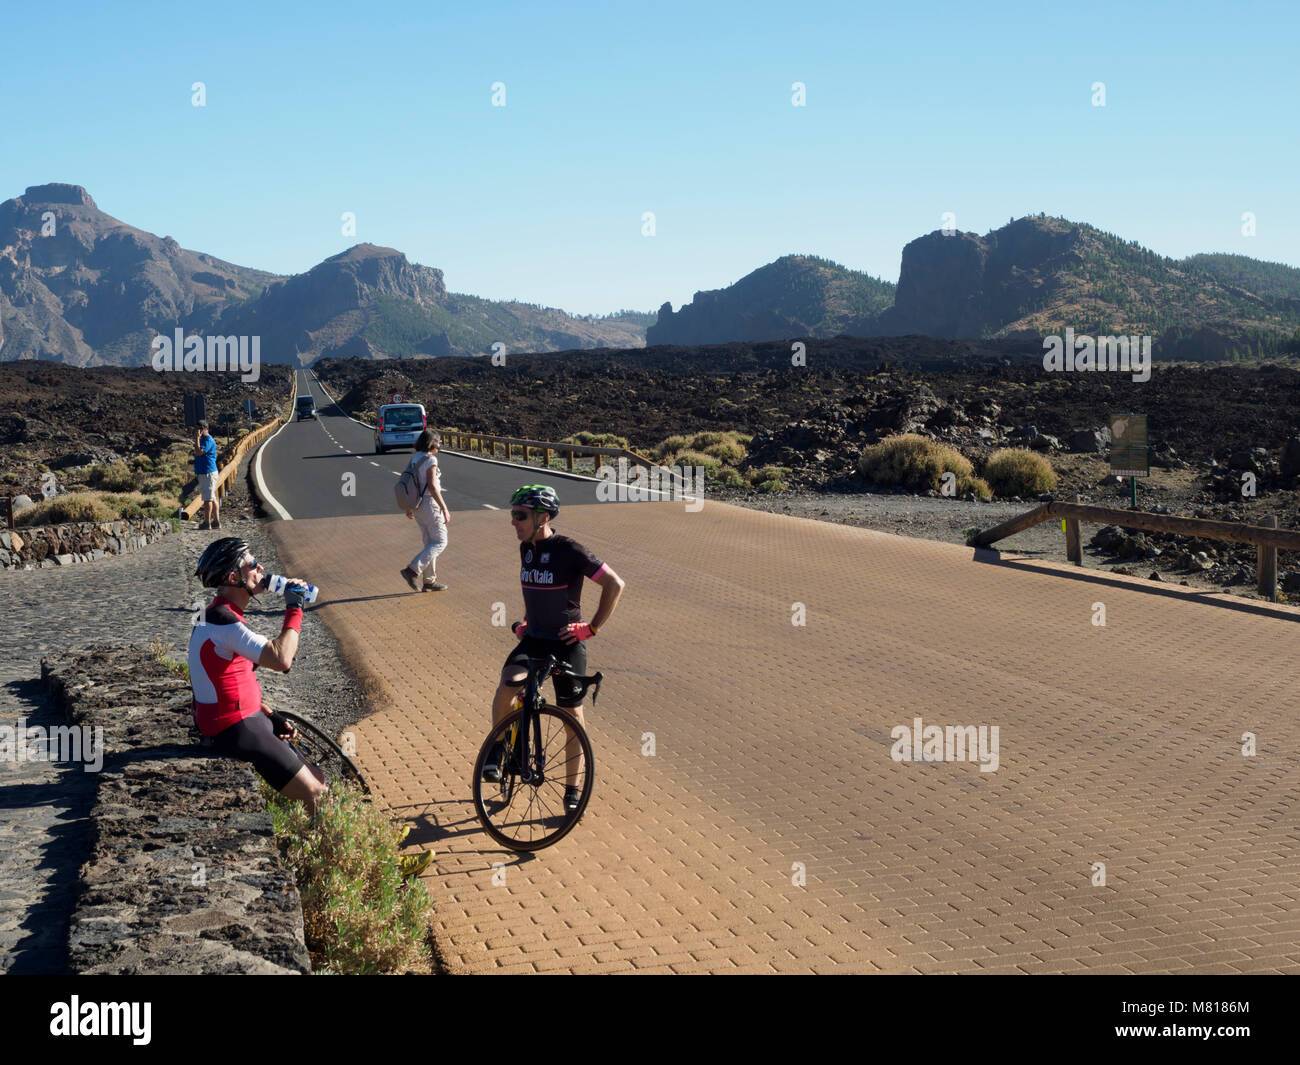 Tenerife, Îles Canaries - l'autoroute TF-21 dans les Cañadas du Teide caldera zone désertique - sport les cyclistes se détendre, entraînement en altitude Banque D'Images